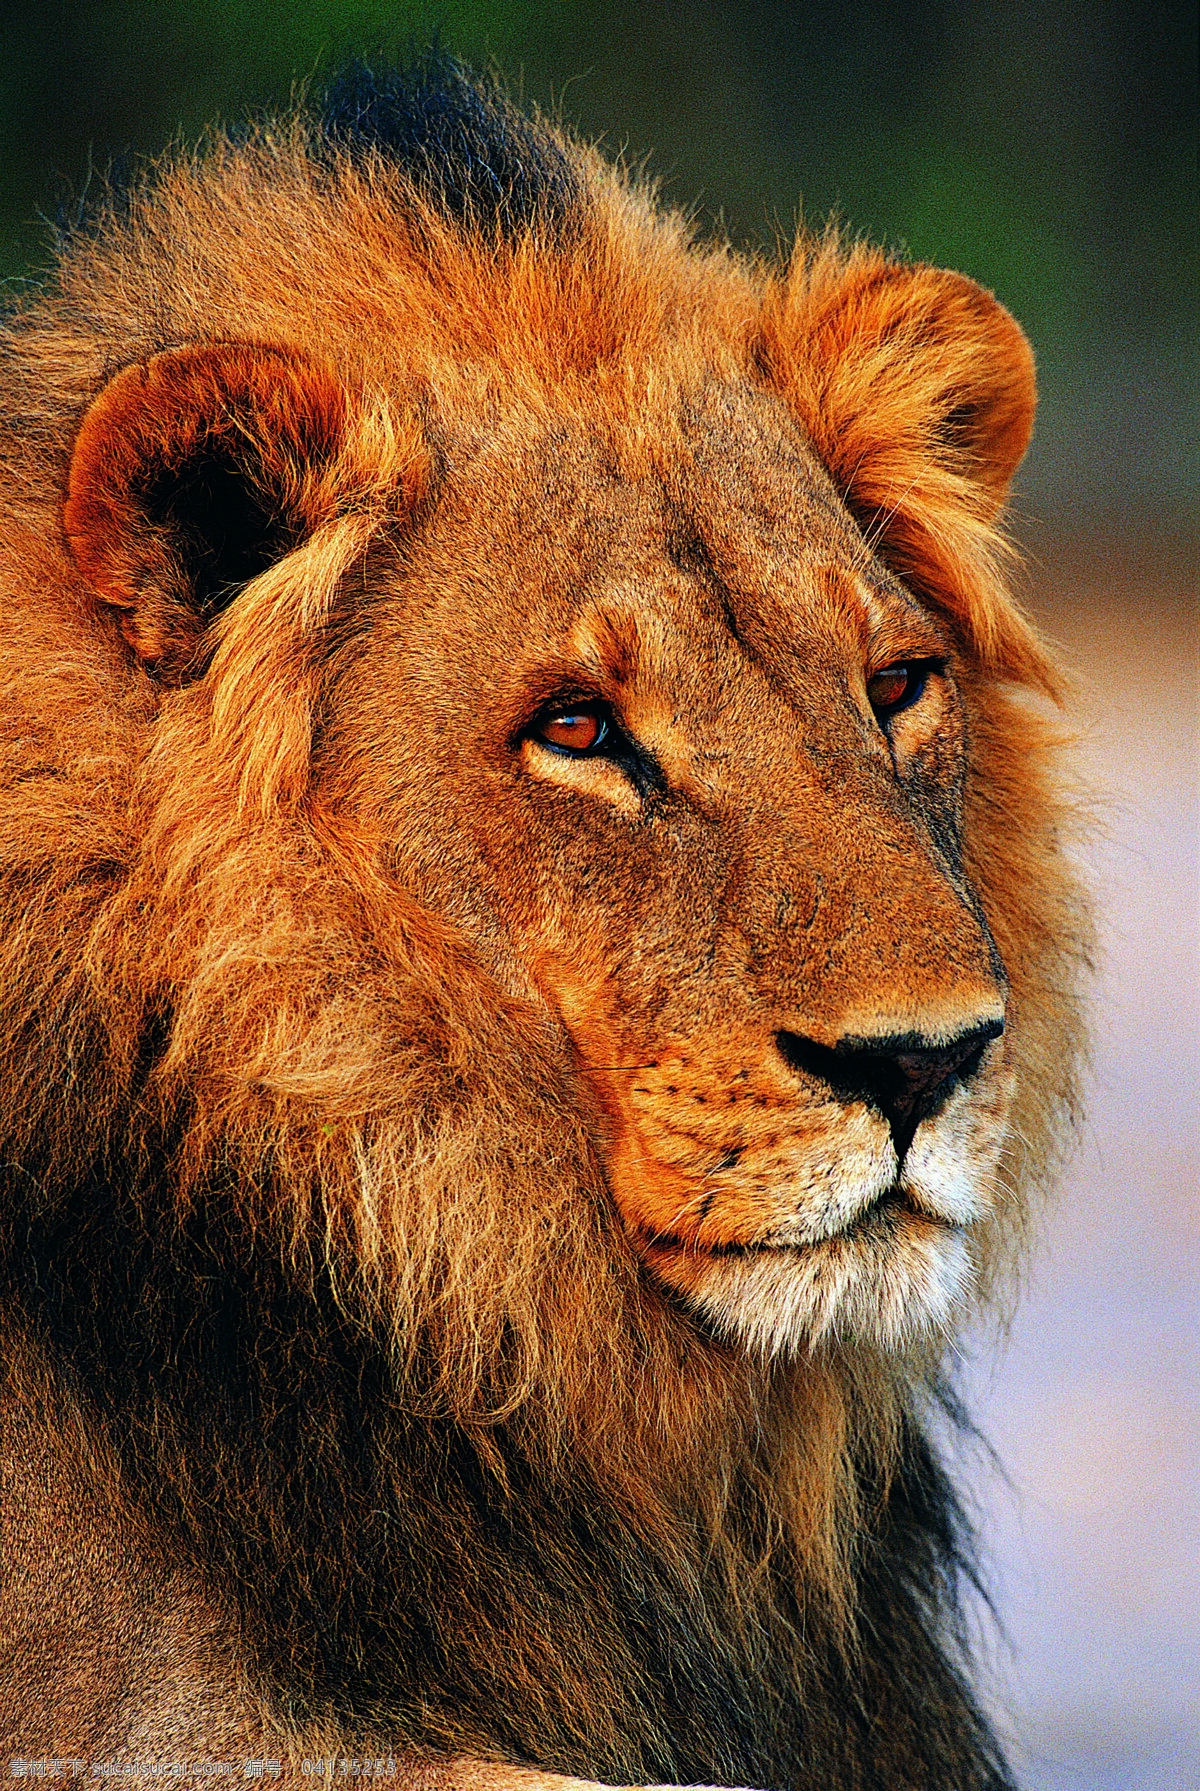 雄狮 狮子 威猛雄狮 狮 王者风范 野生动物 生物世界